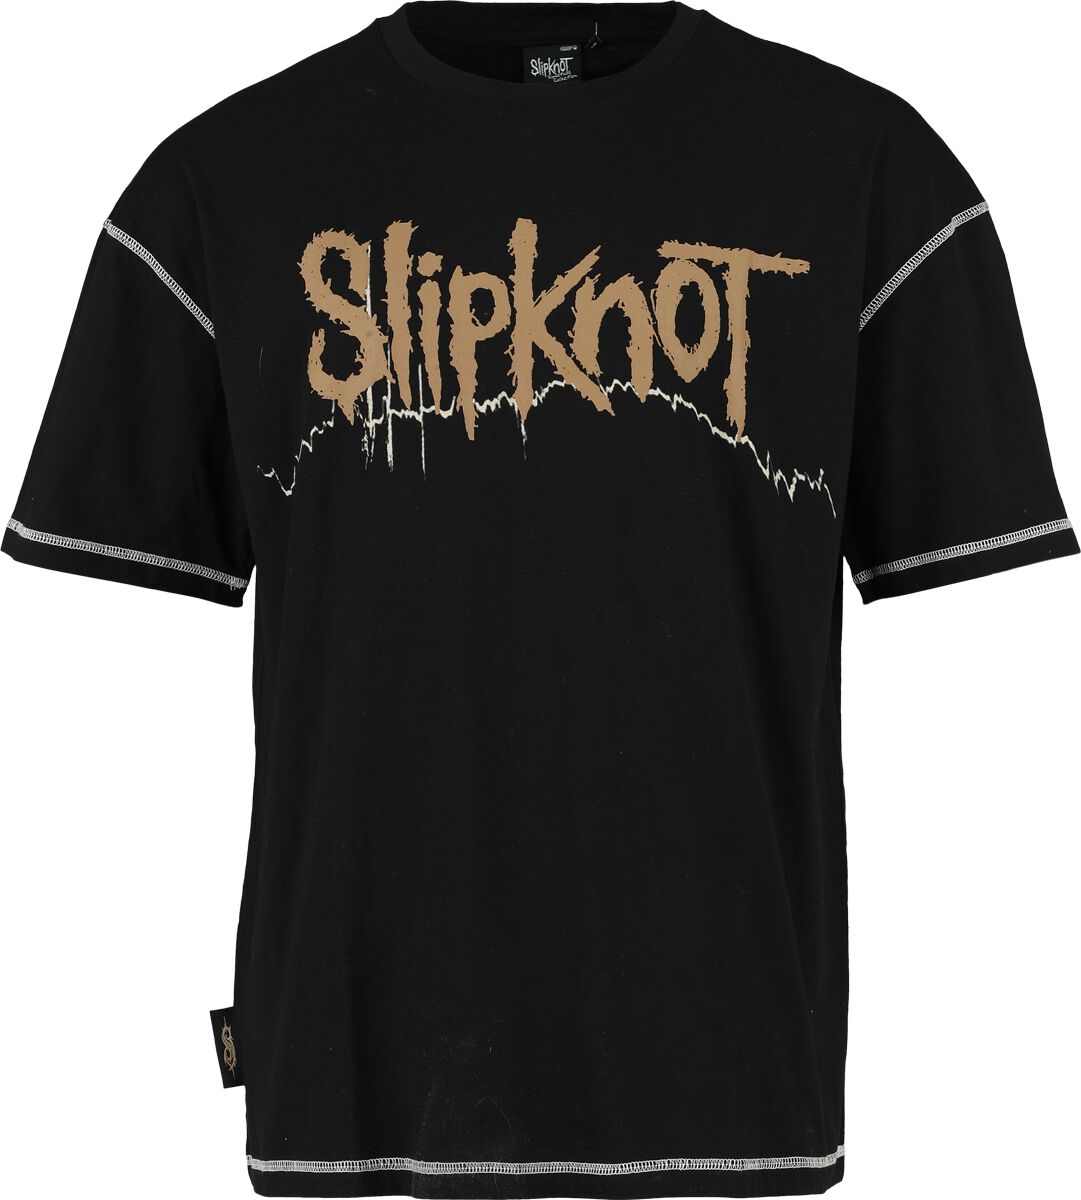 Slipknot T-Shirt - EMP Signature Collection - S bis 3XL - für Männer - Größe S - schwarz  - EMP exklusives Merchandise!